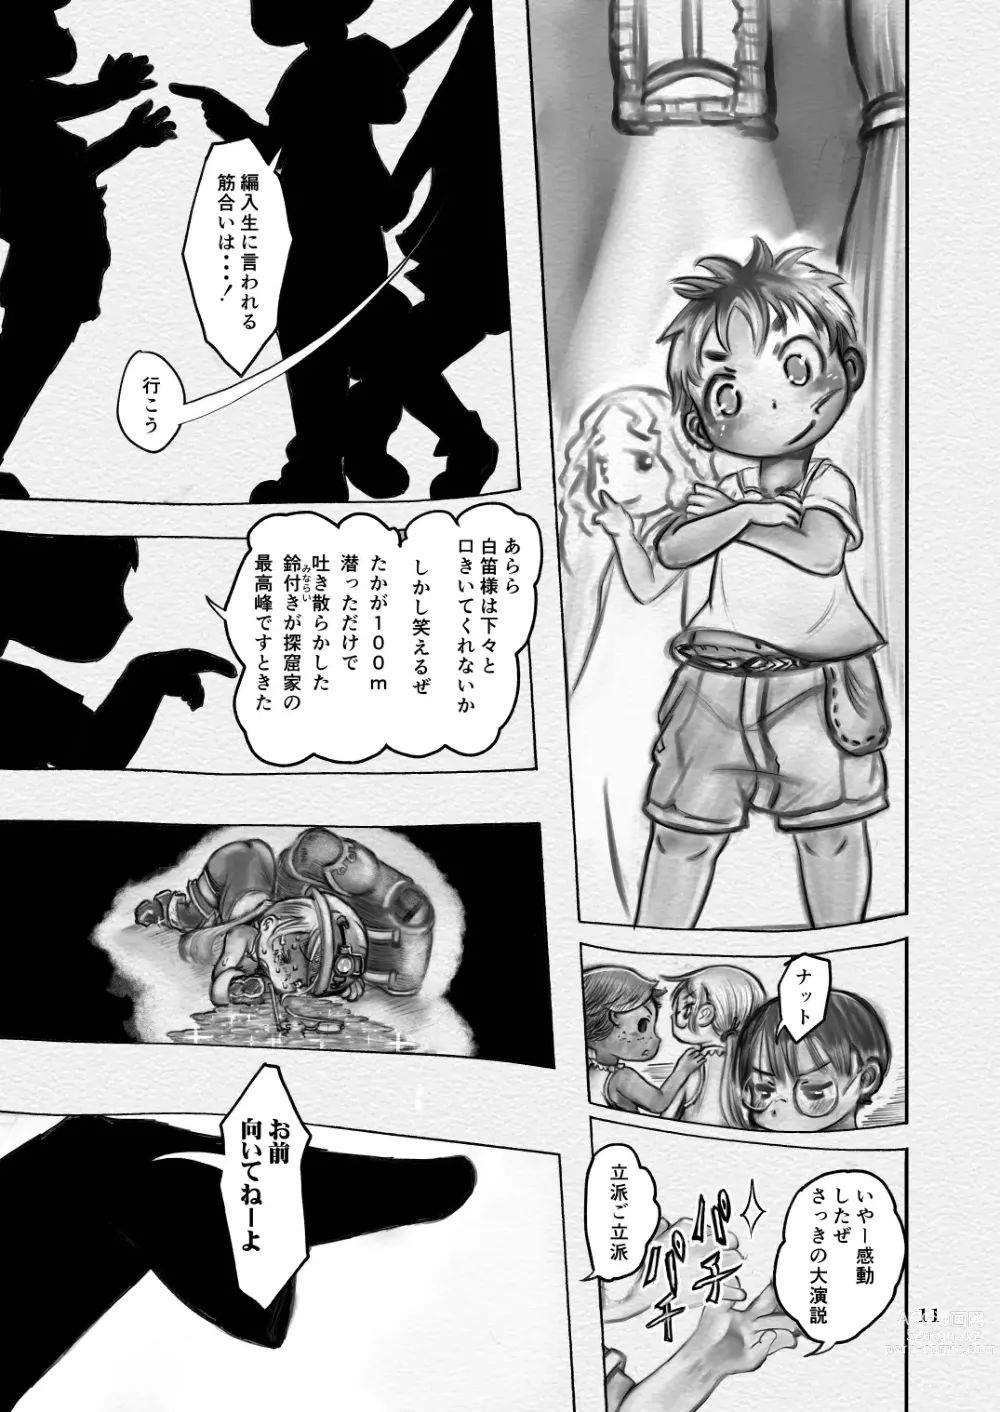 Page 11 of doujinshi Sakubun